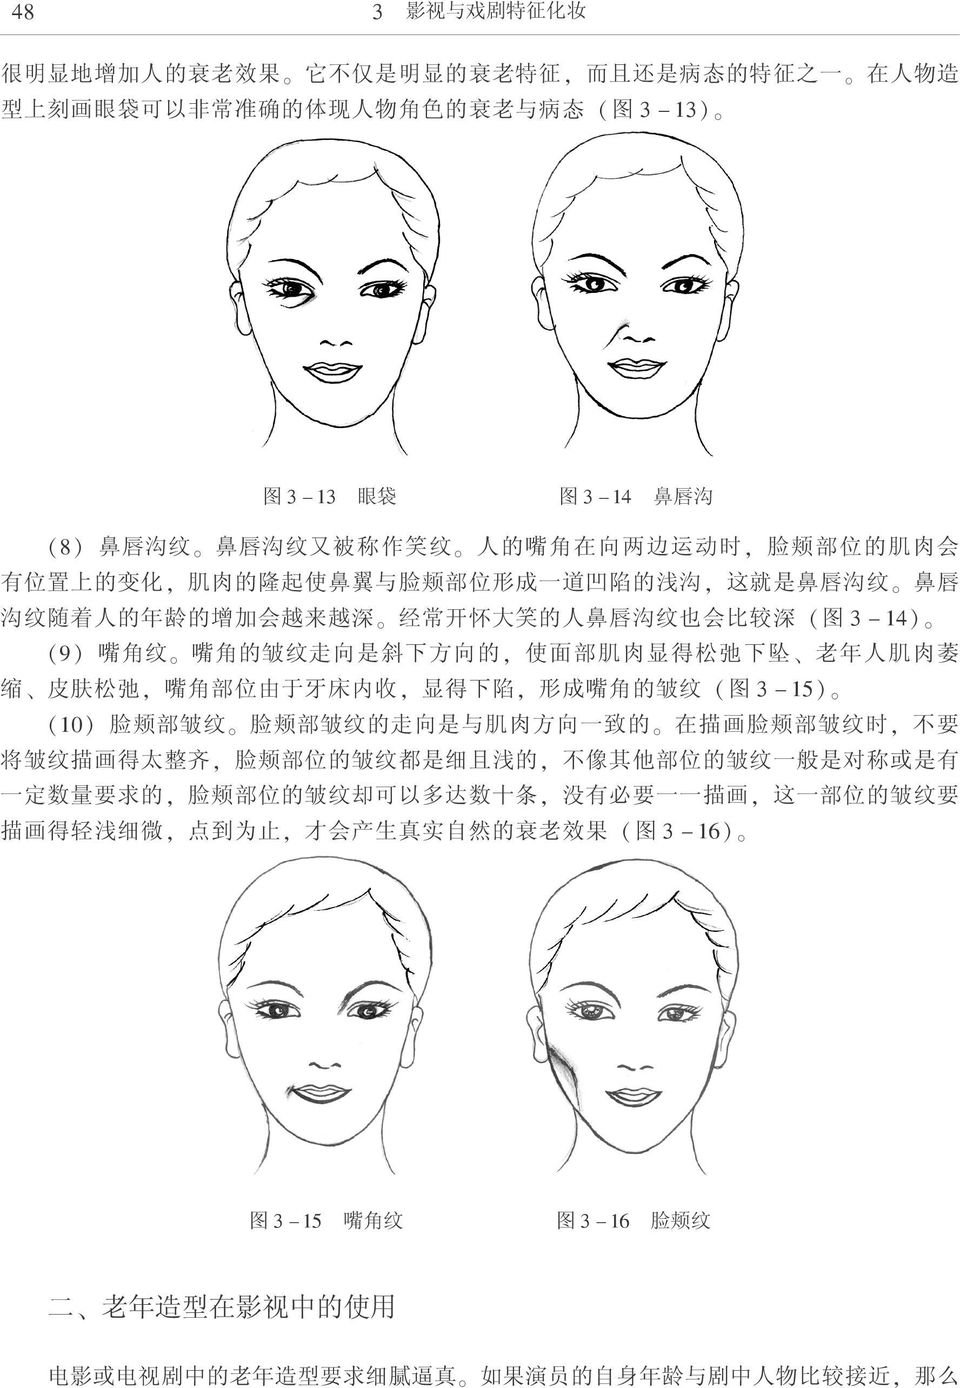 ( 图 3-14) (9) 嘴 角 纹 嘴 角 的 皱 纹 走 向 是 斜 下 方 向 的, 使 面 部 肌 肉 显 得 松 弛 下 坠 老 年 人 肌 肉 萎 缩 皮 肤 松 弛, 嘴 角 部 位 由 于 牙 床 内 收, 显 得 下 陷, 形 成 嘴 角 的 皱 纹 ( 图 3-15) (10) 脸 颊 部 皱 纹 脸 颊 部 皱 纹 的 走 向 是 与 肌 肉 方 向 一 致 的 在 描